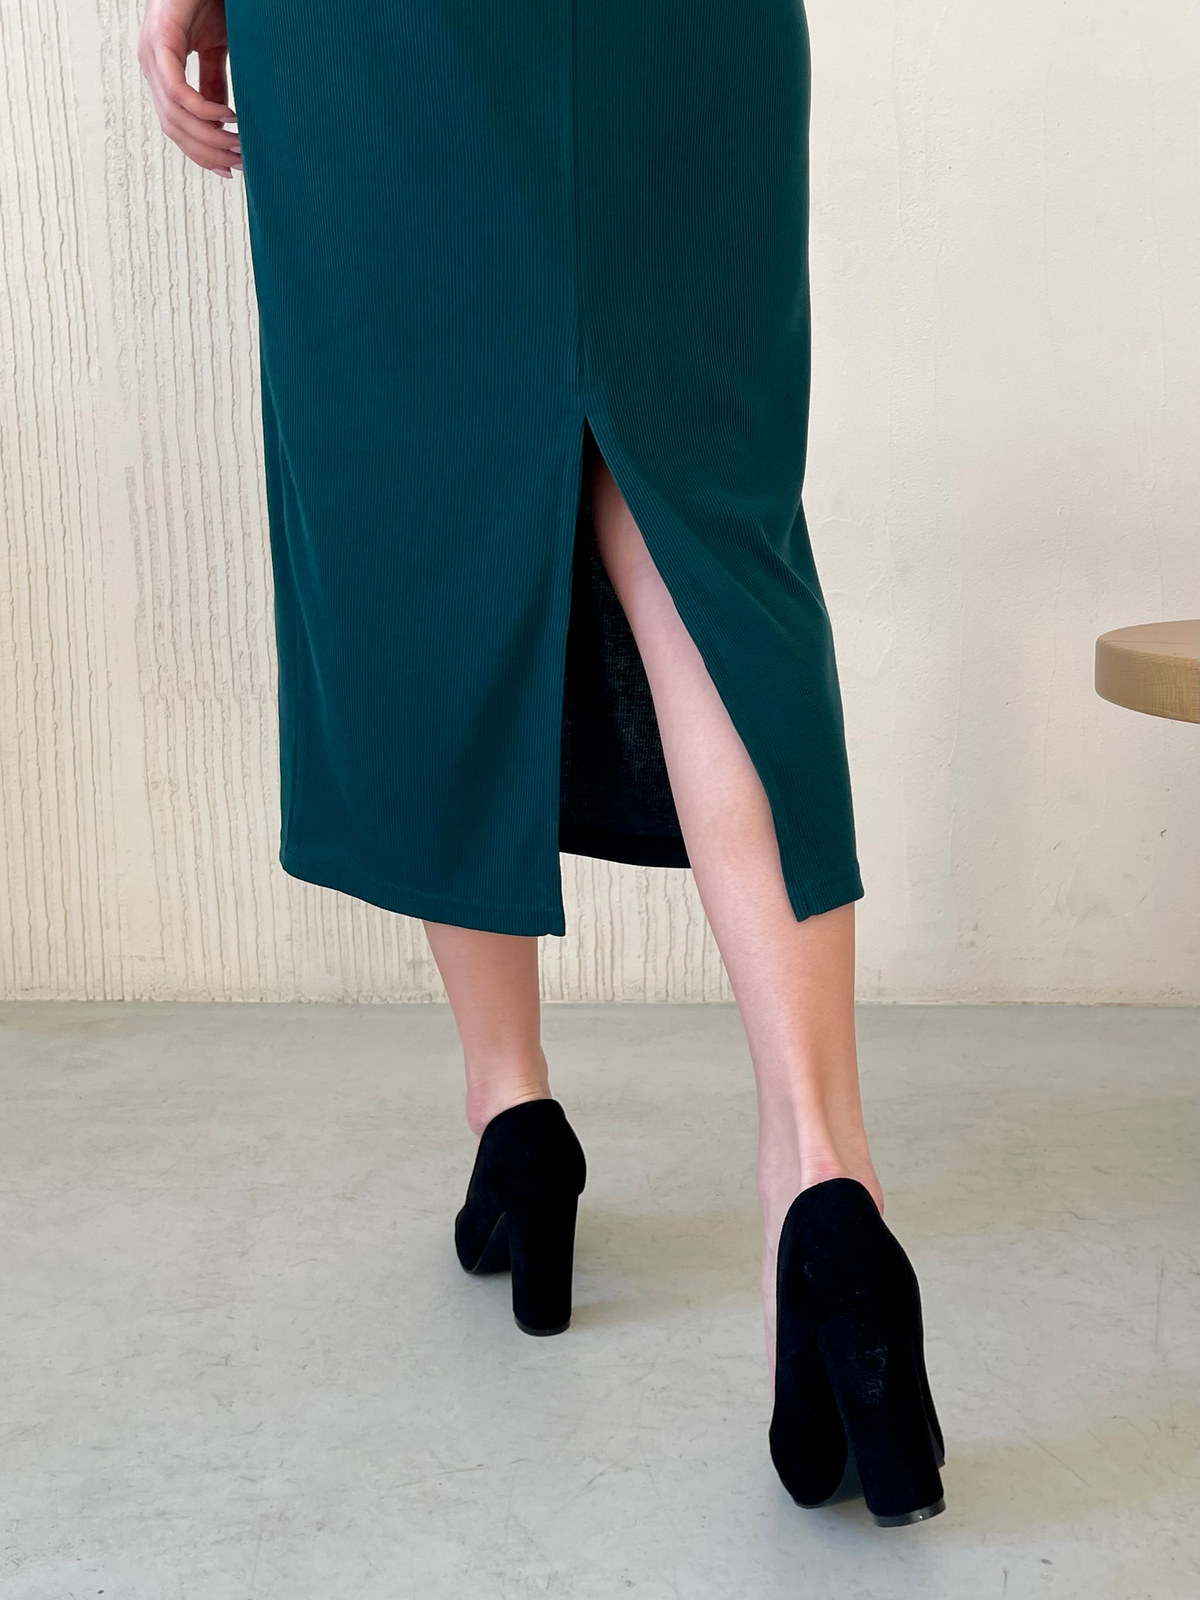 Купить Длинное зеленое платье в рубчик с длинным рукавом Merlini Венето 700001143, размер 42-44 (S-M) в интернет-магазине